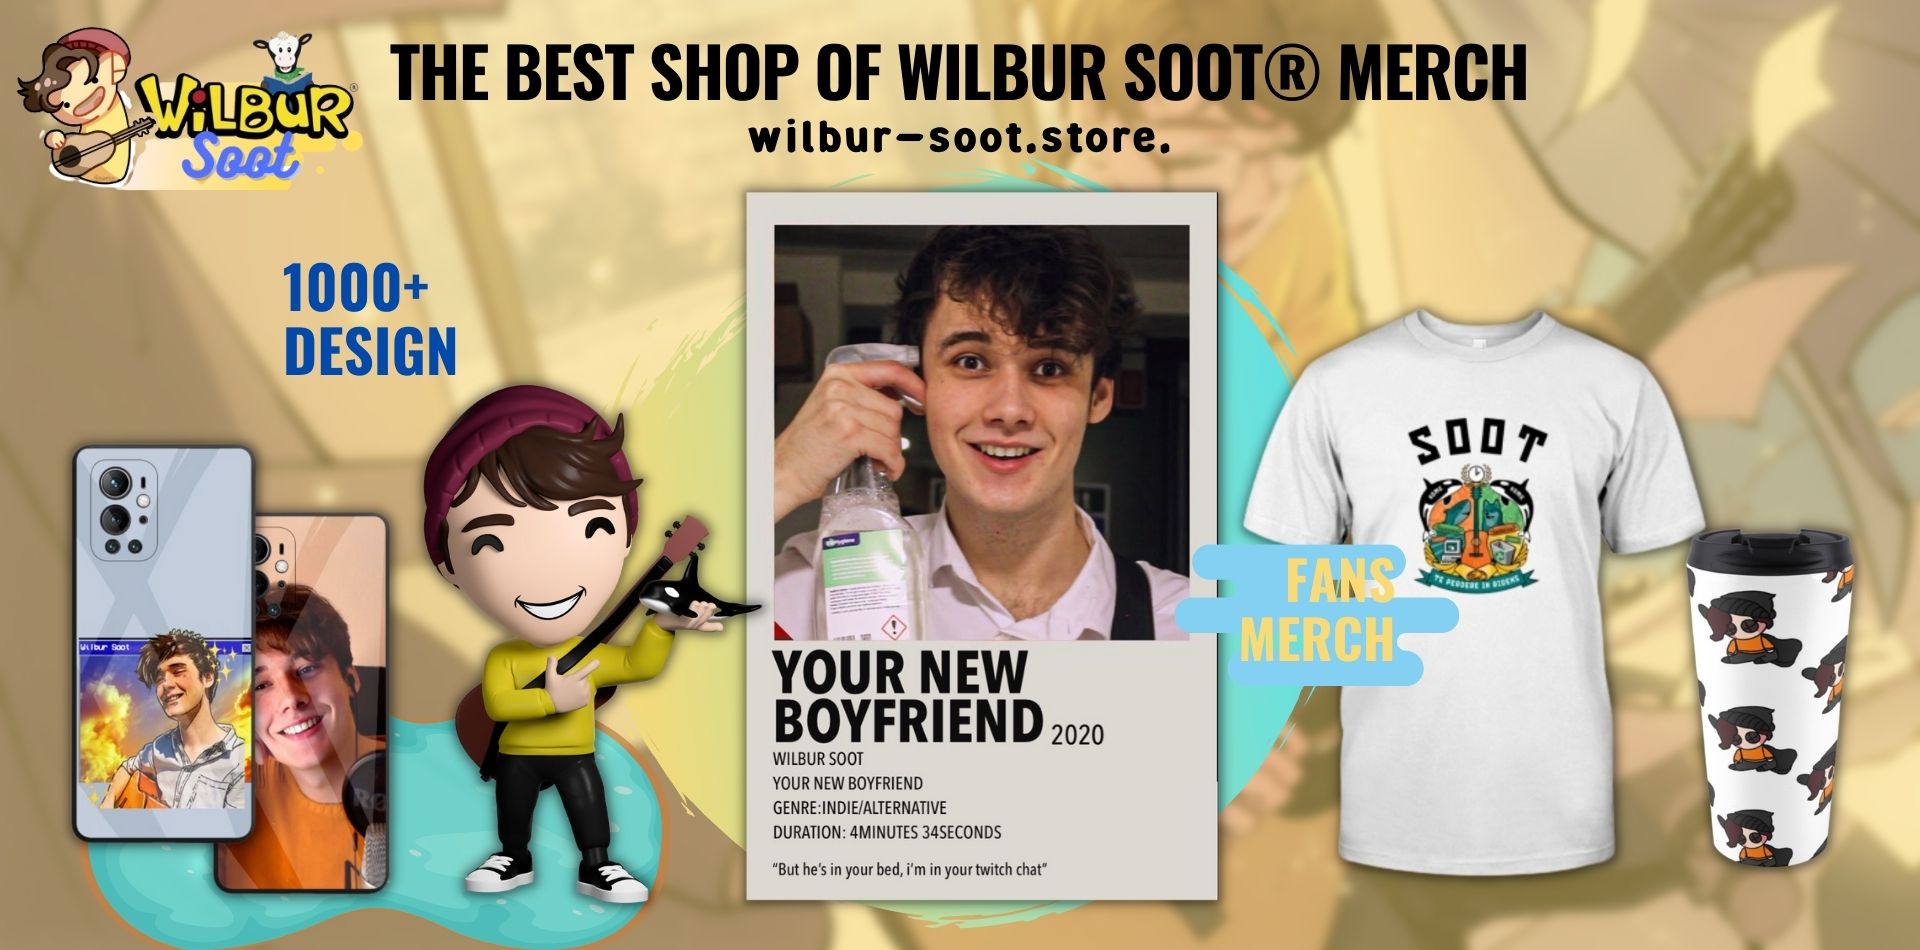 Wilbur Soot Shop Web Banner - Wilbur Soot Shop